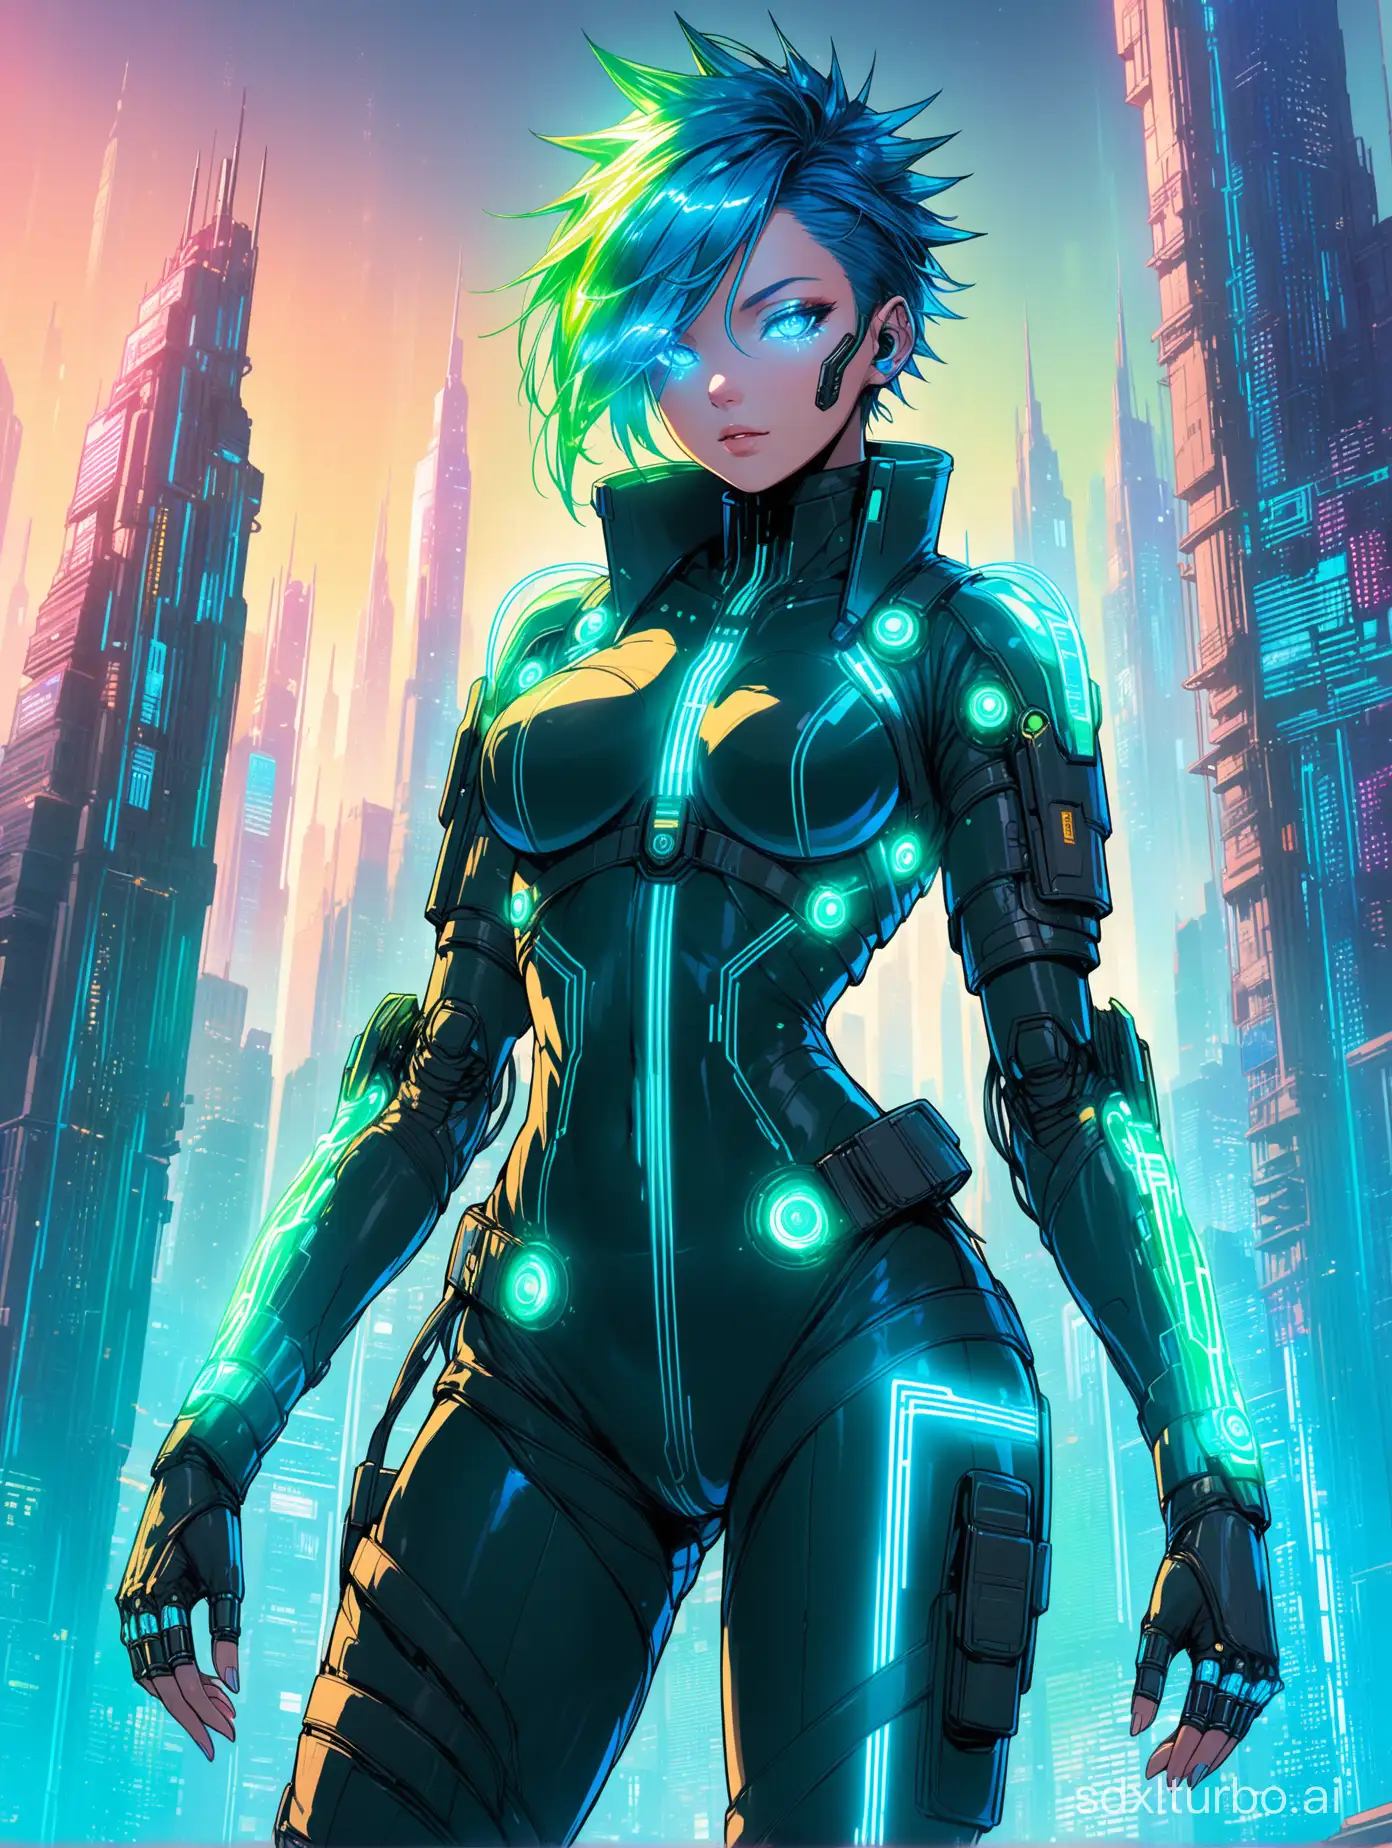 Futuristic-Cyborg-Woman-in-Cyberpunk-Cityscape